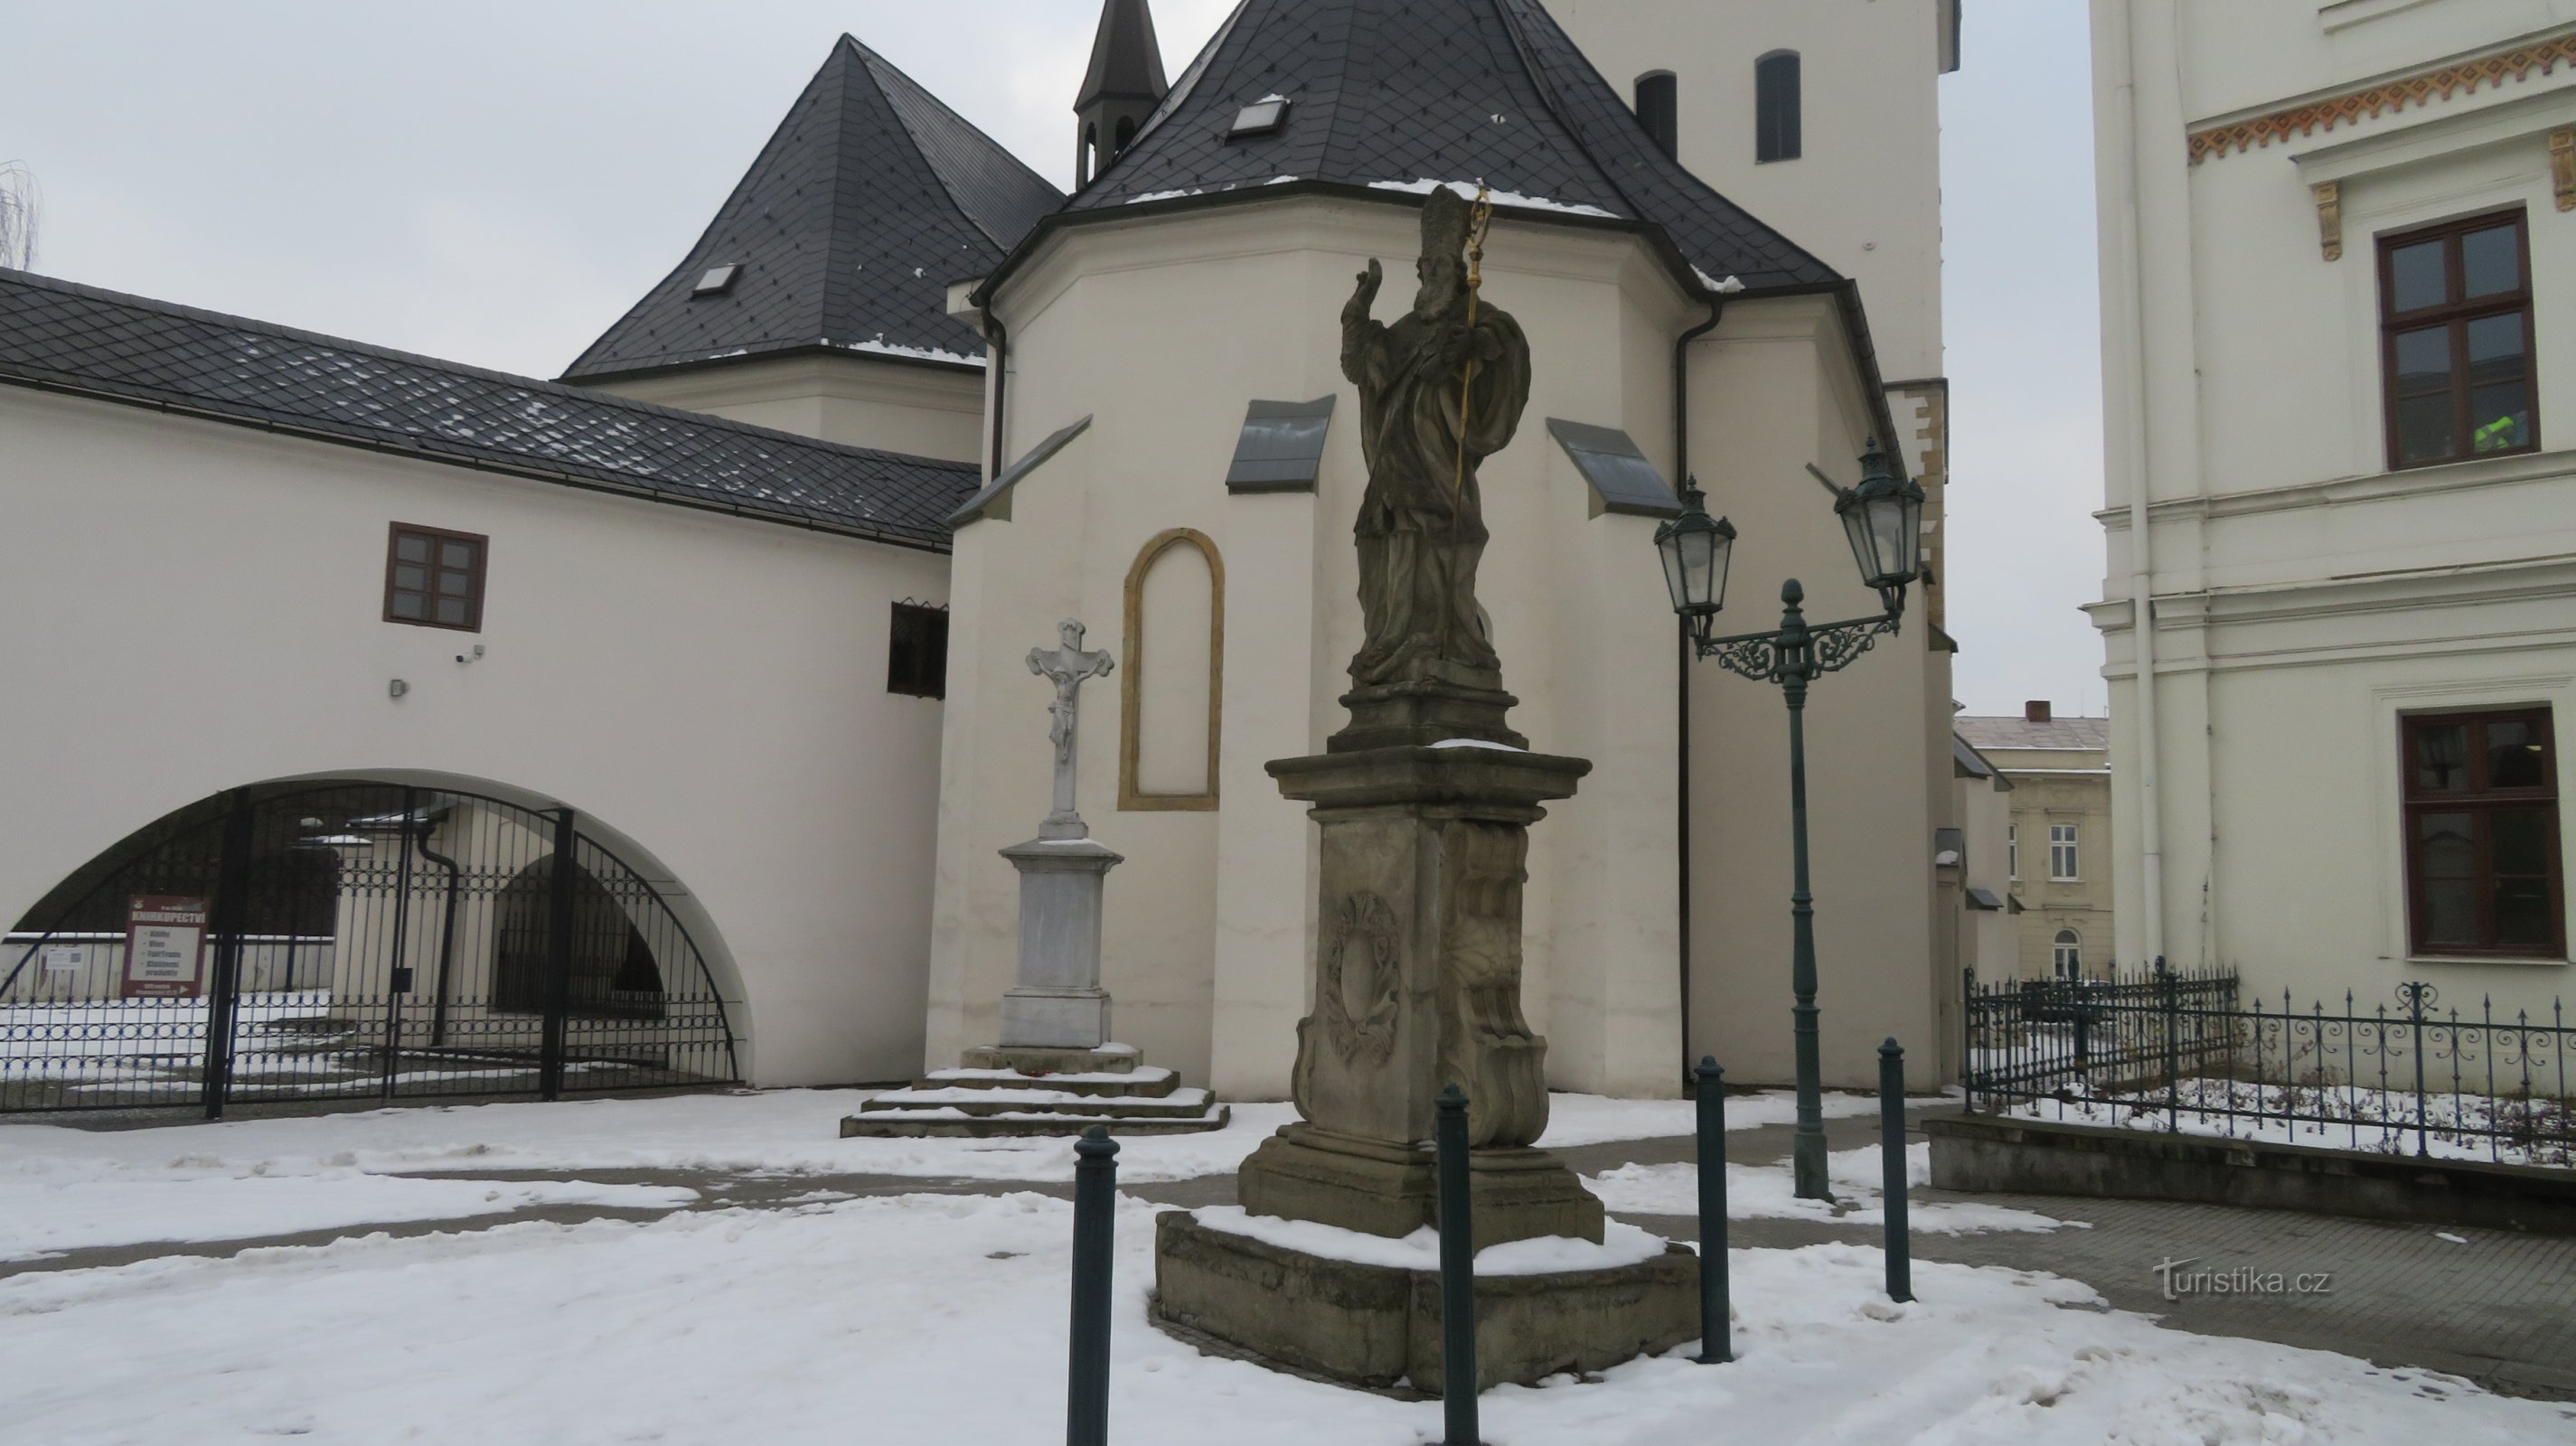 カルヴィナー - 聖パウロの唯一の XNUMX つの彫像。 チェコ共和国のパトリック